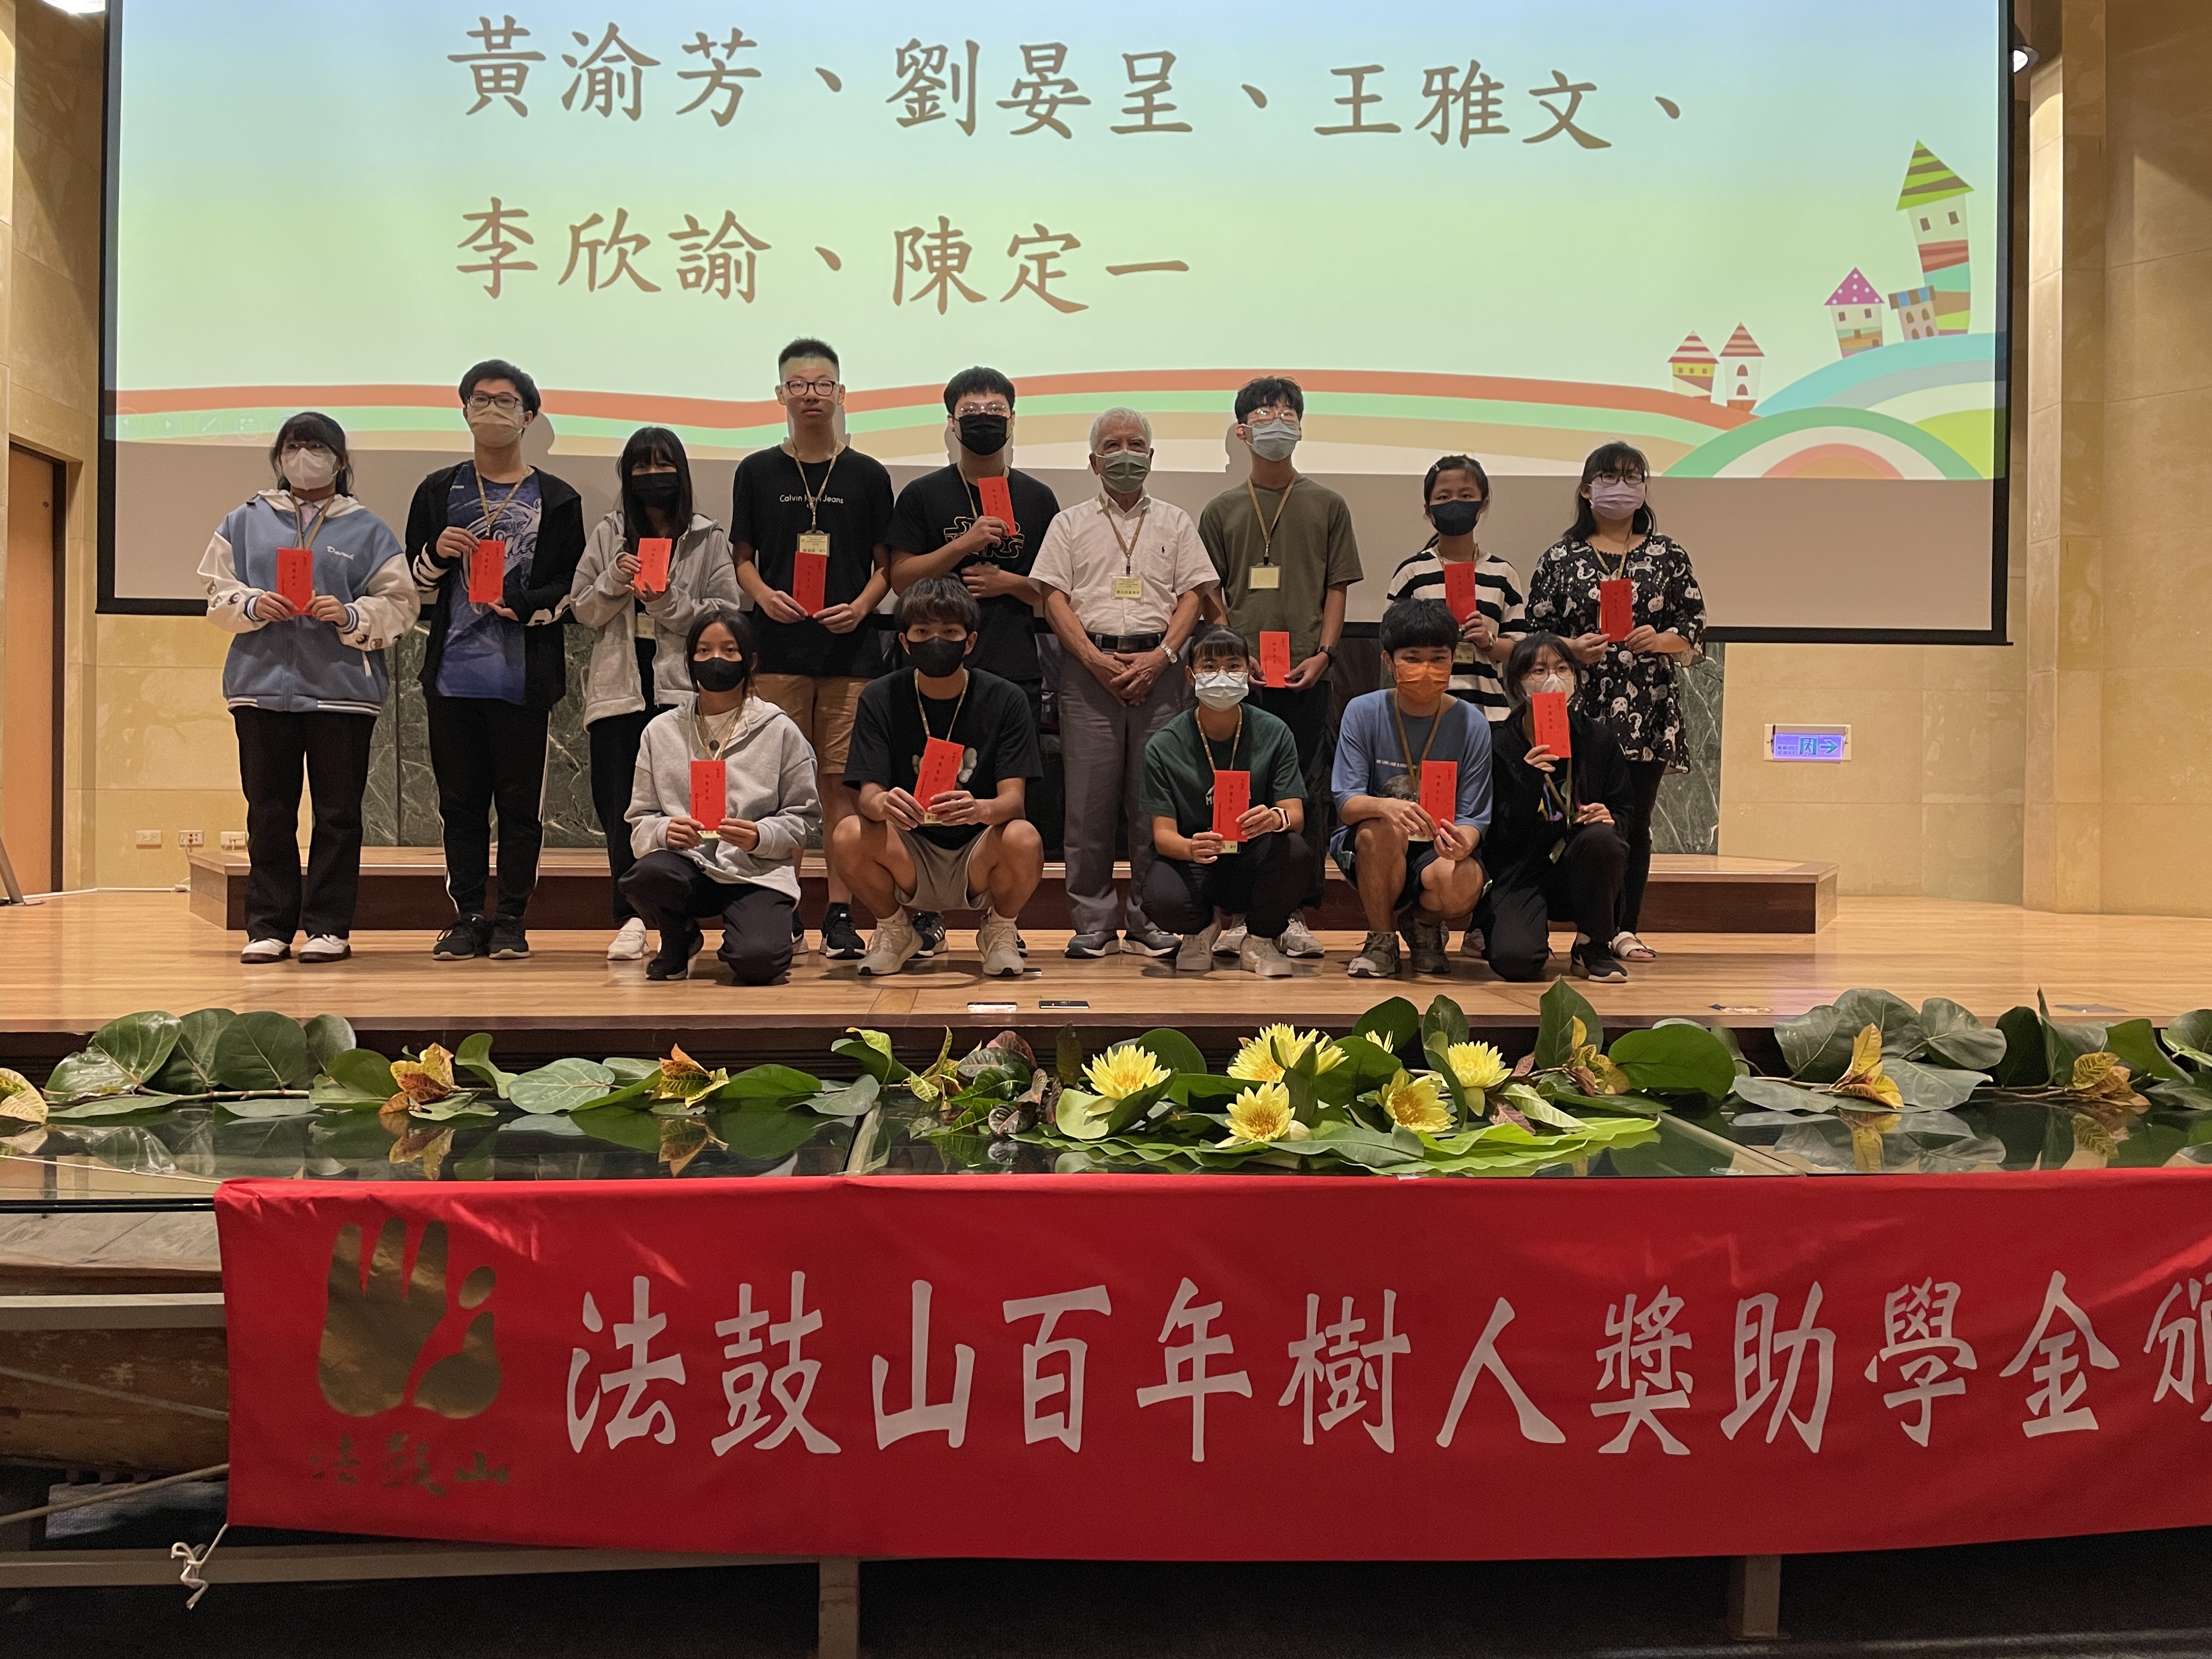 長期護持教育事業的宇慶建設董事長鄭光吉頒發獎助學金給受獎學生。